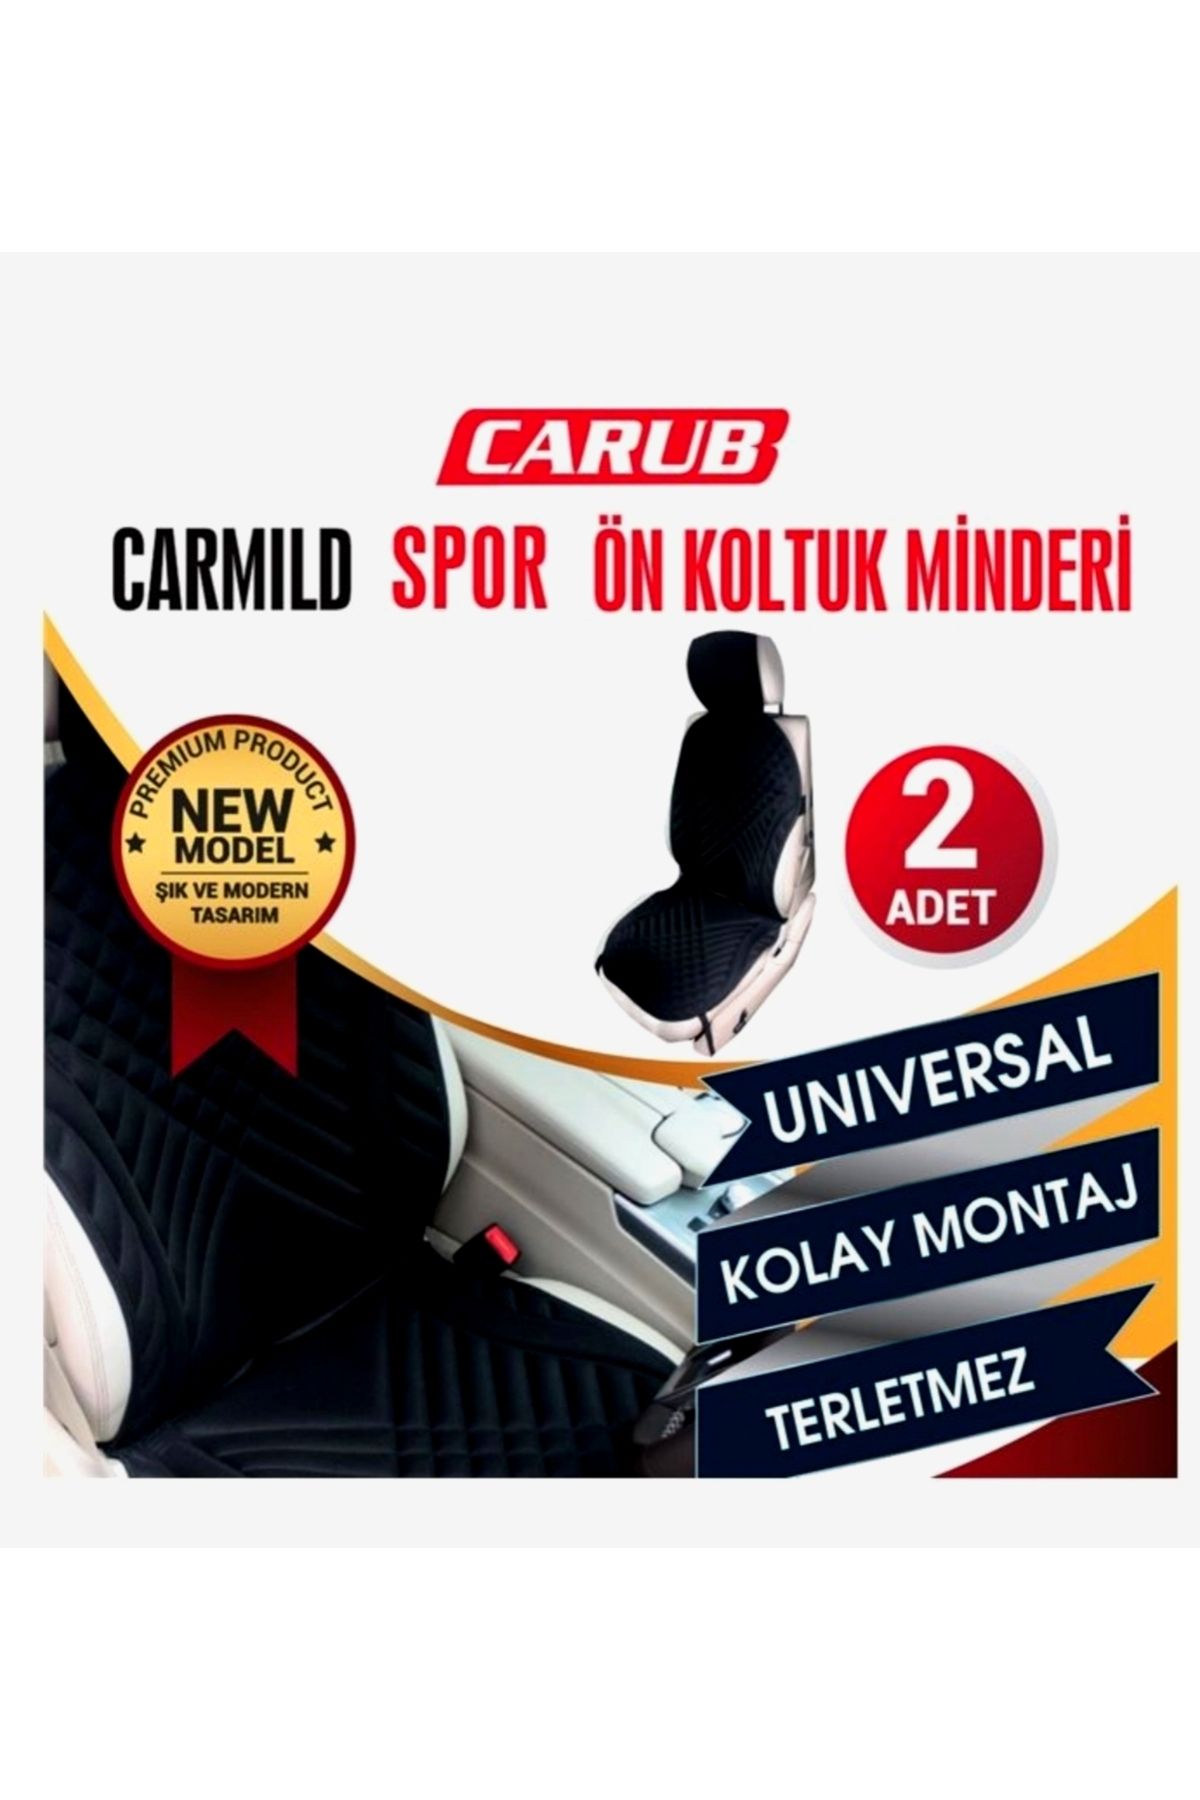 Carub Carmild Oto Koltuk Kılıfı Spor Ön Koltuk Minderi 2li Set Siyah Renk